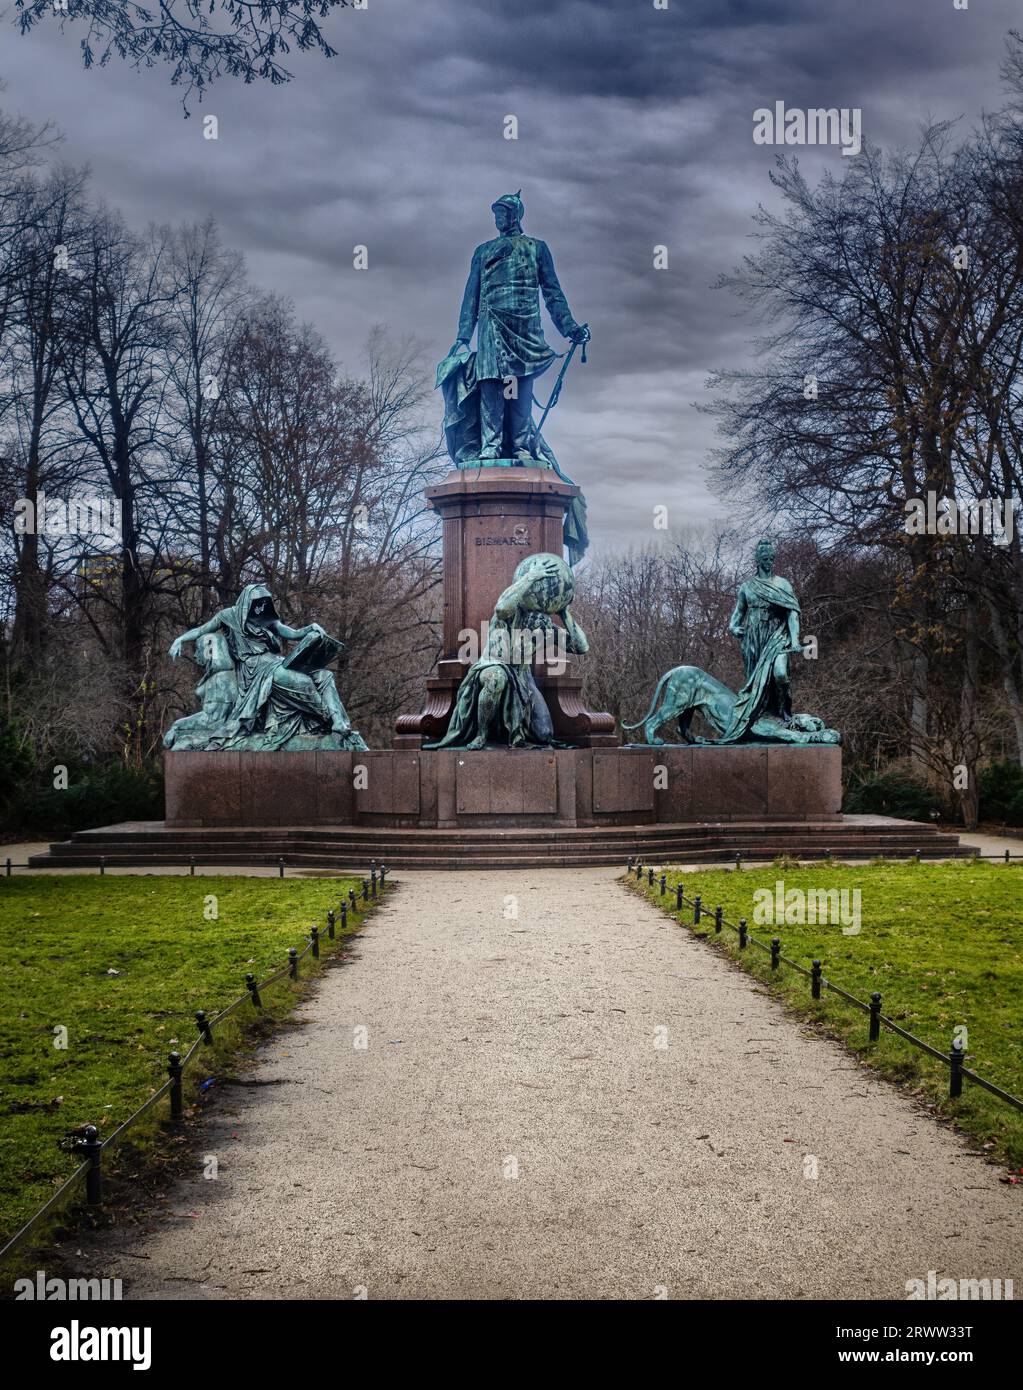 Statue of Bismarck in Tiergarten, Berlin, Germany Stock Photo